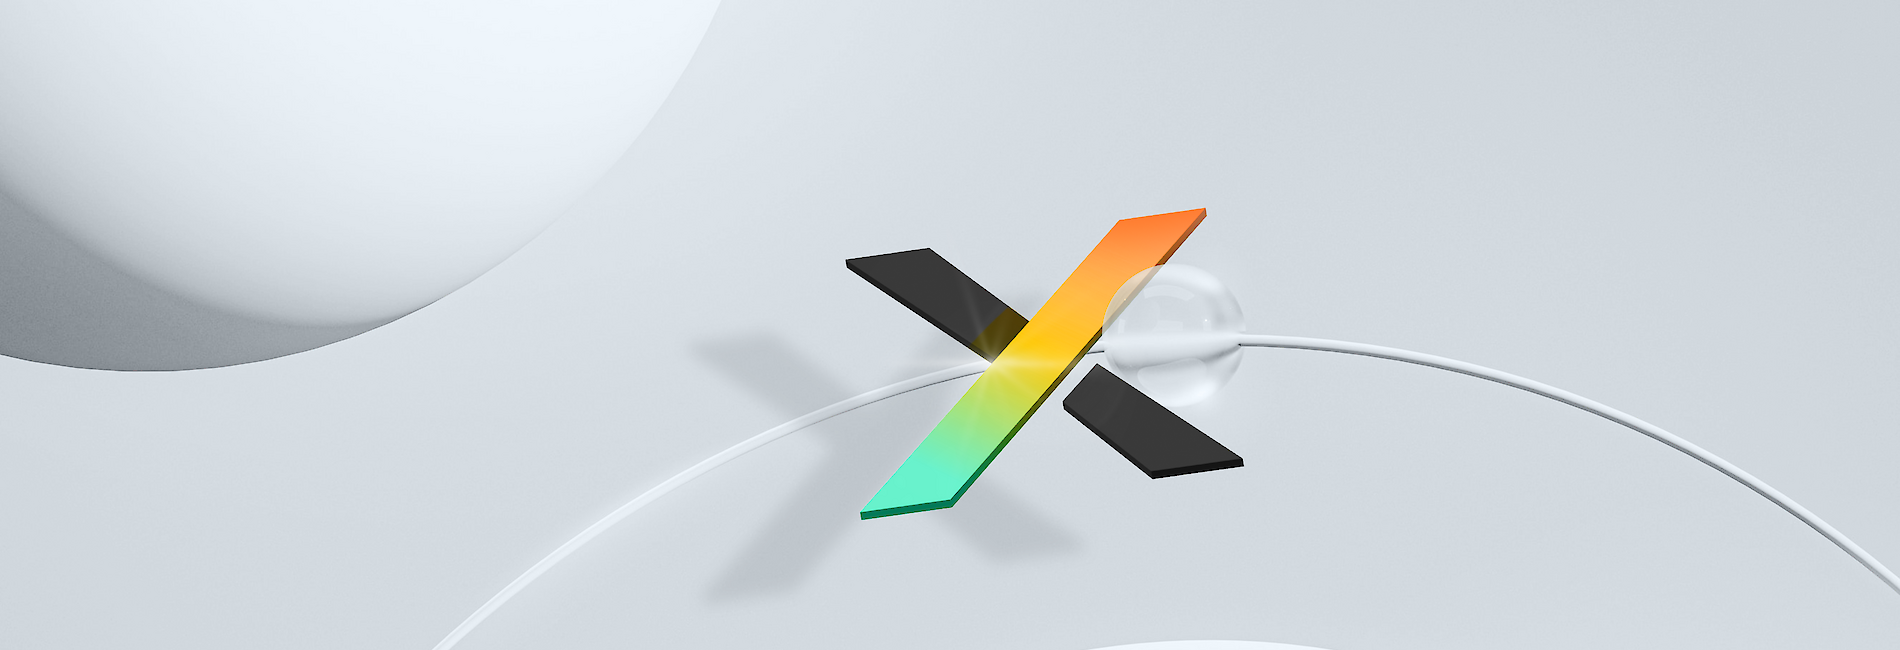 ebx.lab-Visual mit farbigem Buchstaben X